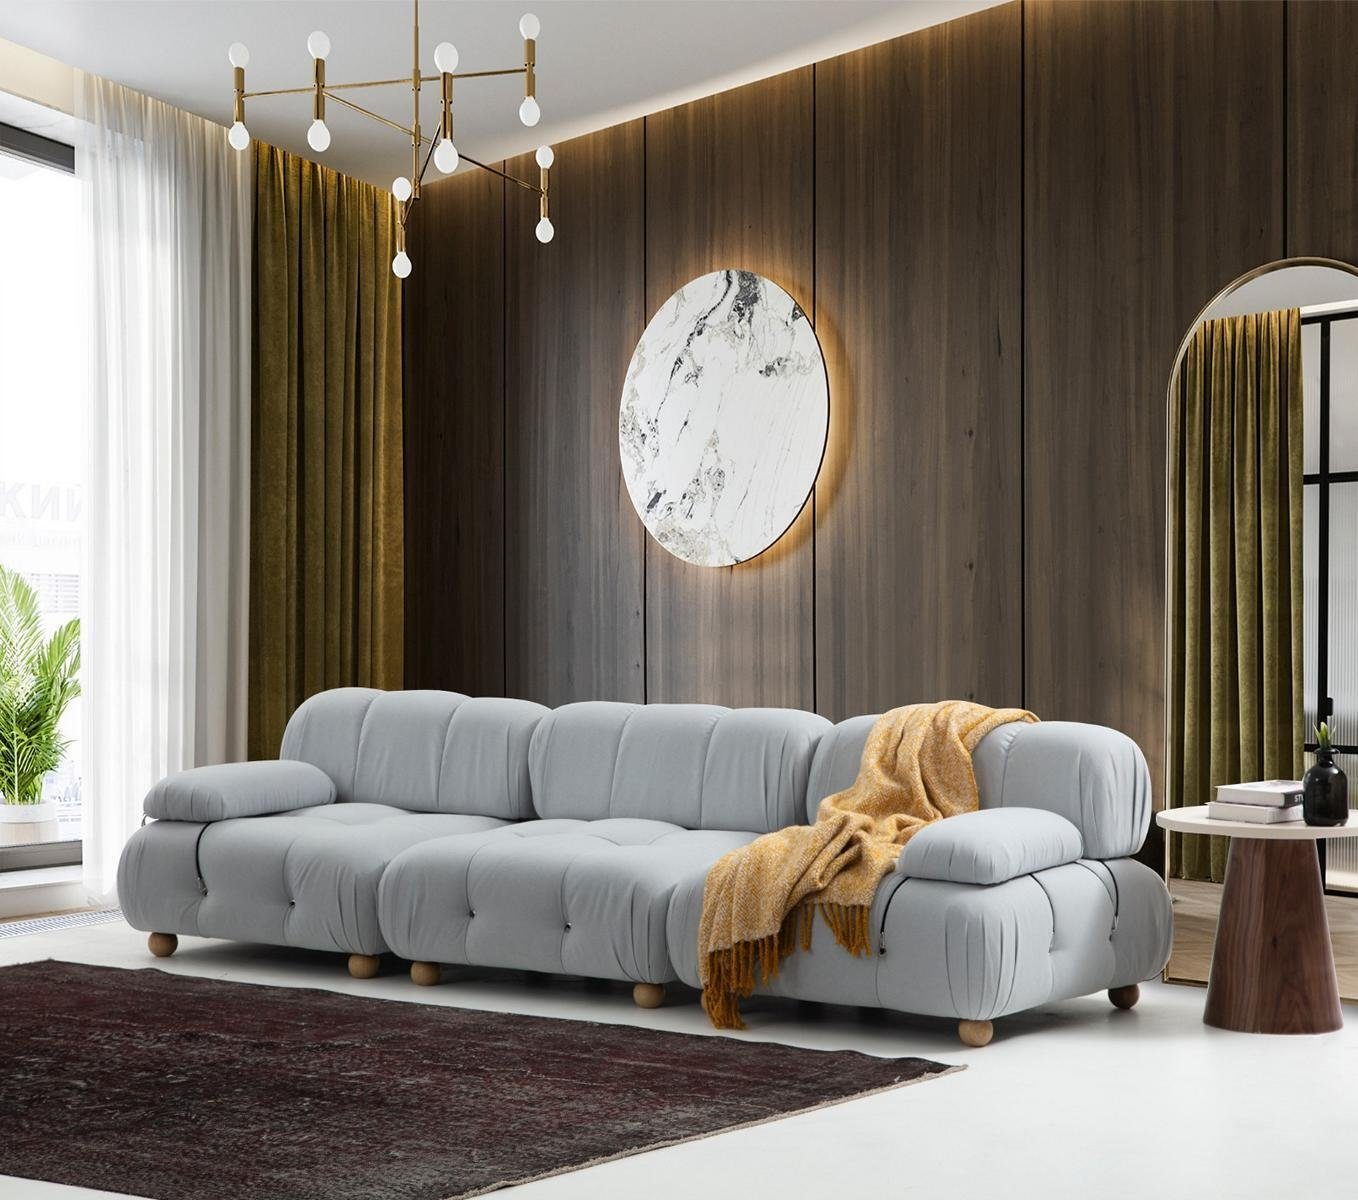 JVmoebel Europa Neu, Sofas Stoff 3-Sitzer 3 Teile, Sitzer Dreisitzer Modern in Design 3 Grau Wohnzimmer Sofa Made